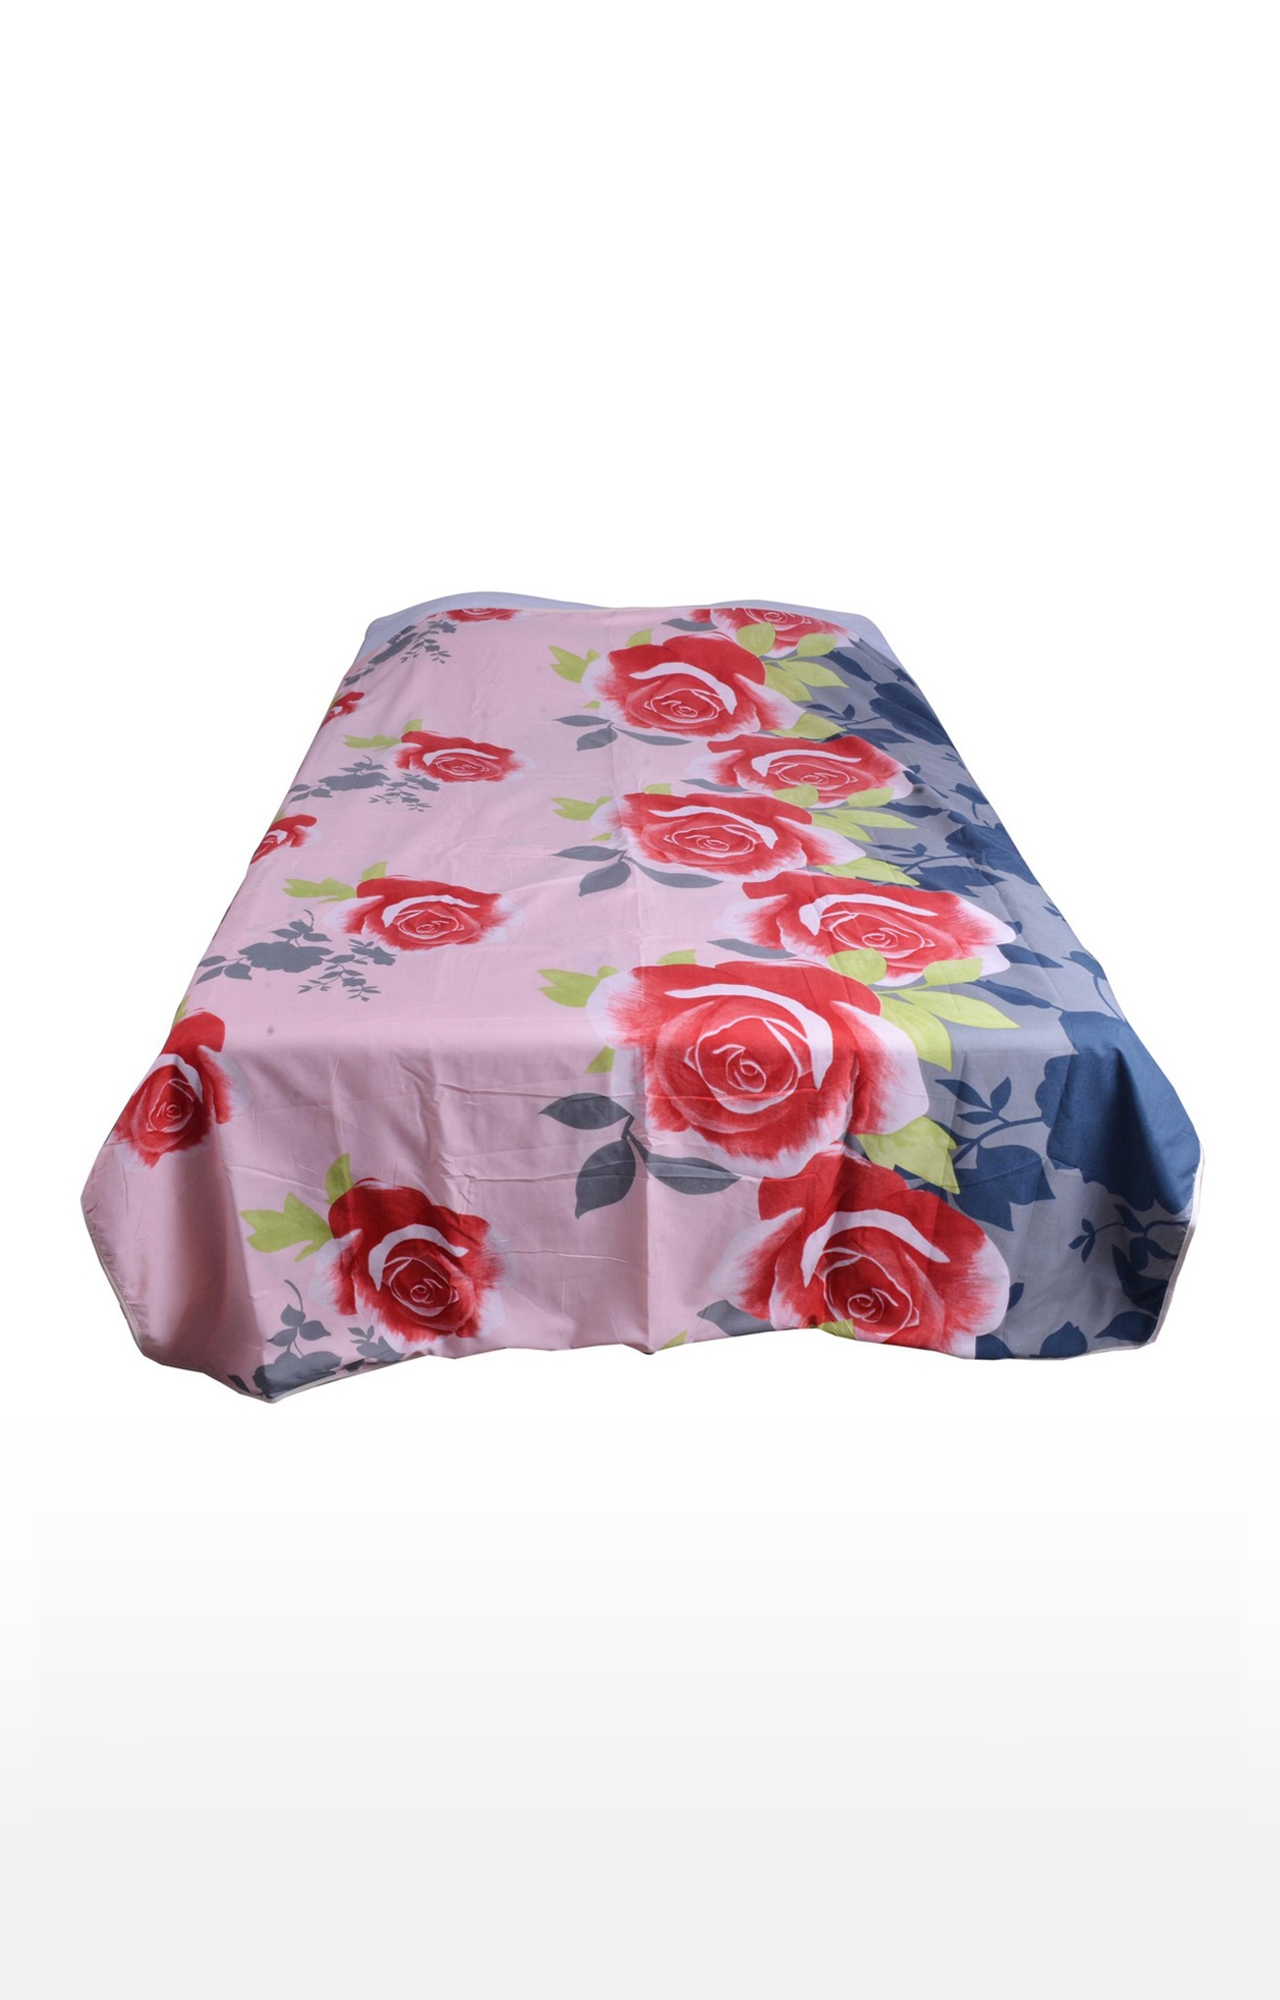 V Brown | Rose Flower Printed Cotton 3 Layer Single Bed Quilt Dohar